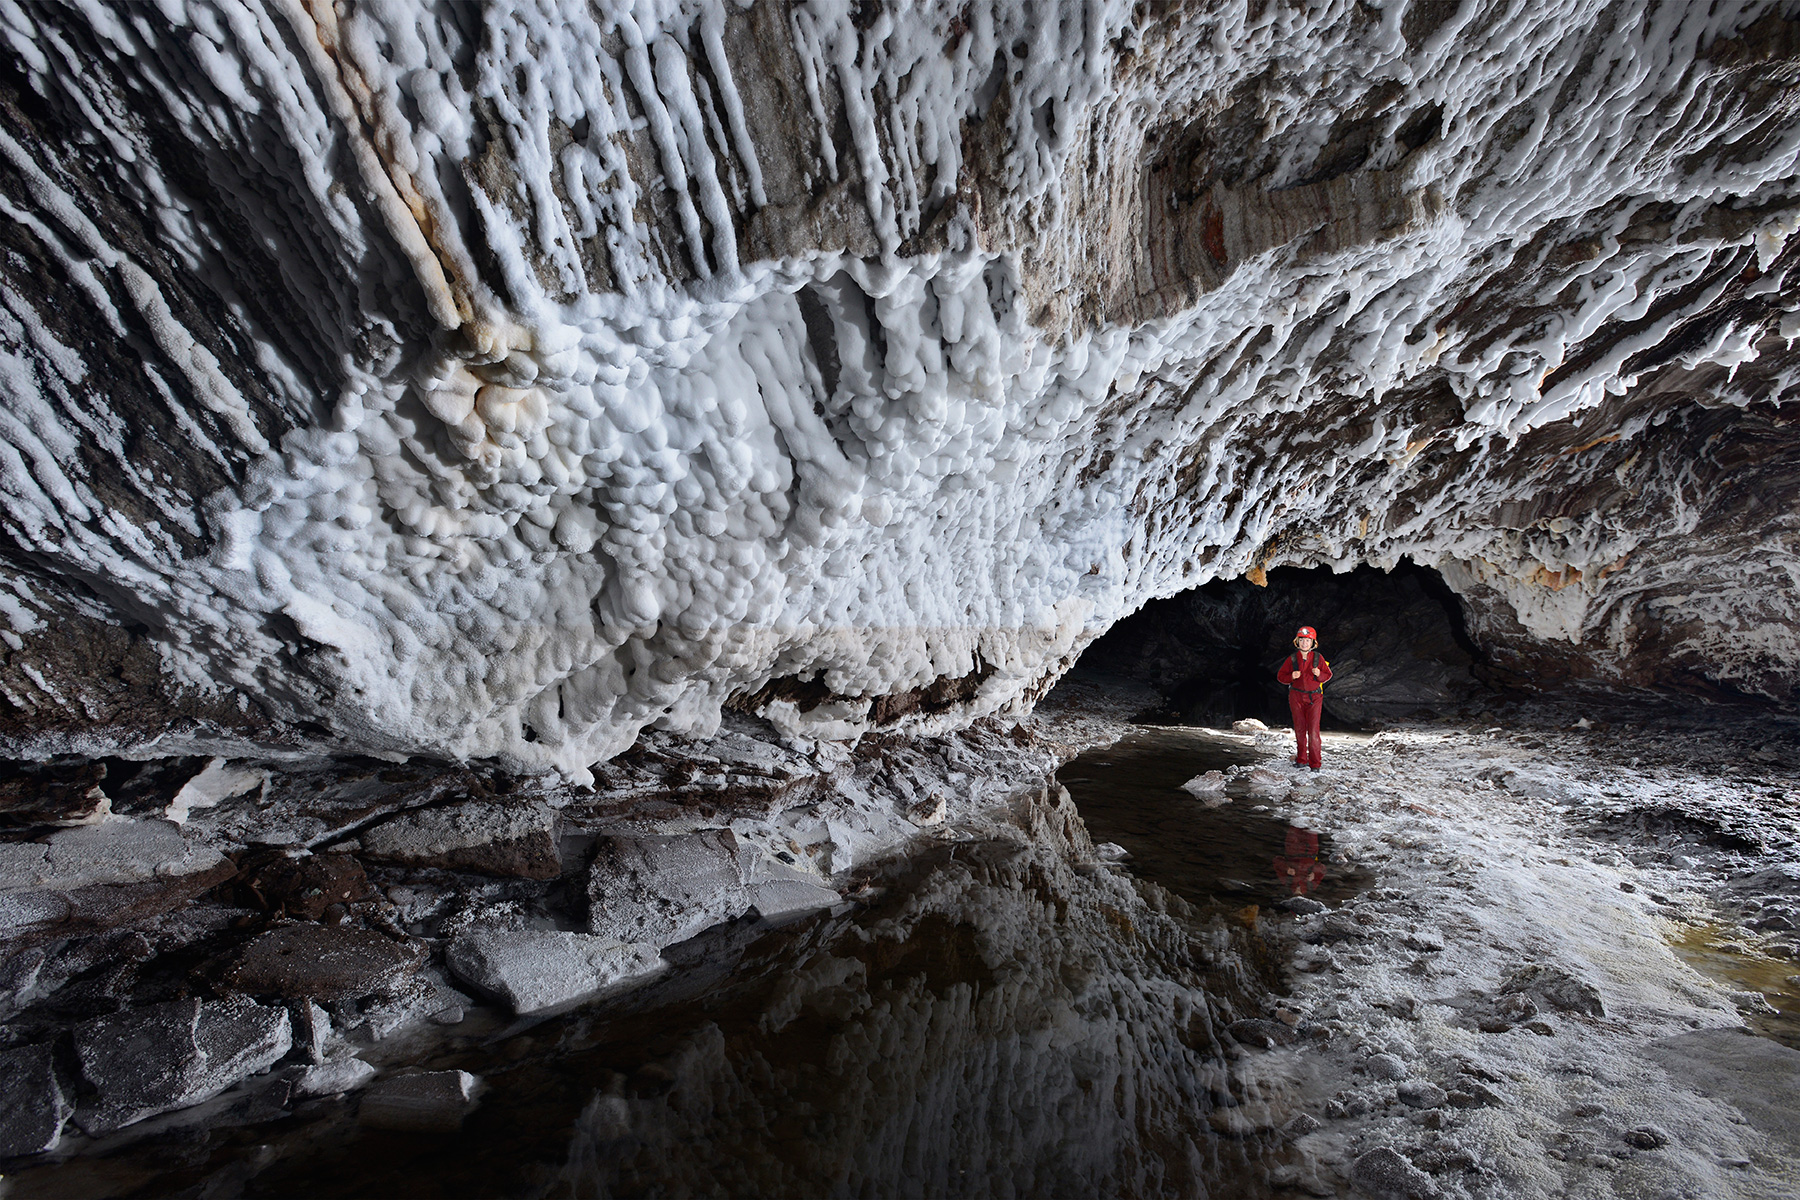 3N Cave(Namakdan, Qeshm, Iran) - Progression dans la rivière avec coulées de sel sur les parois de la galerie